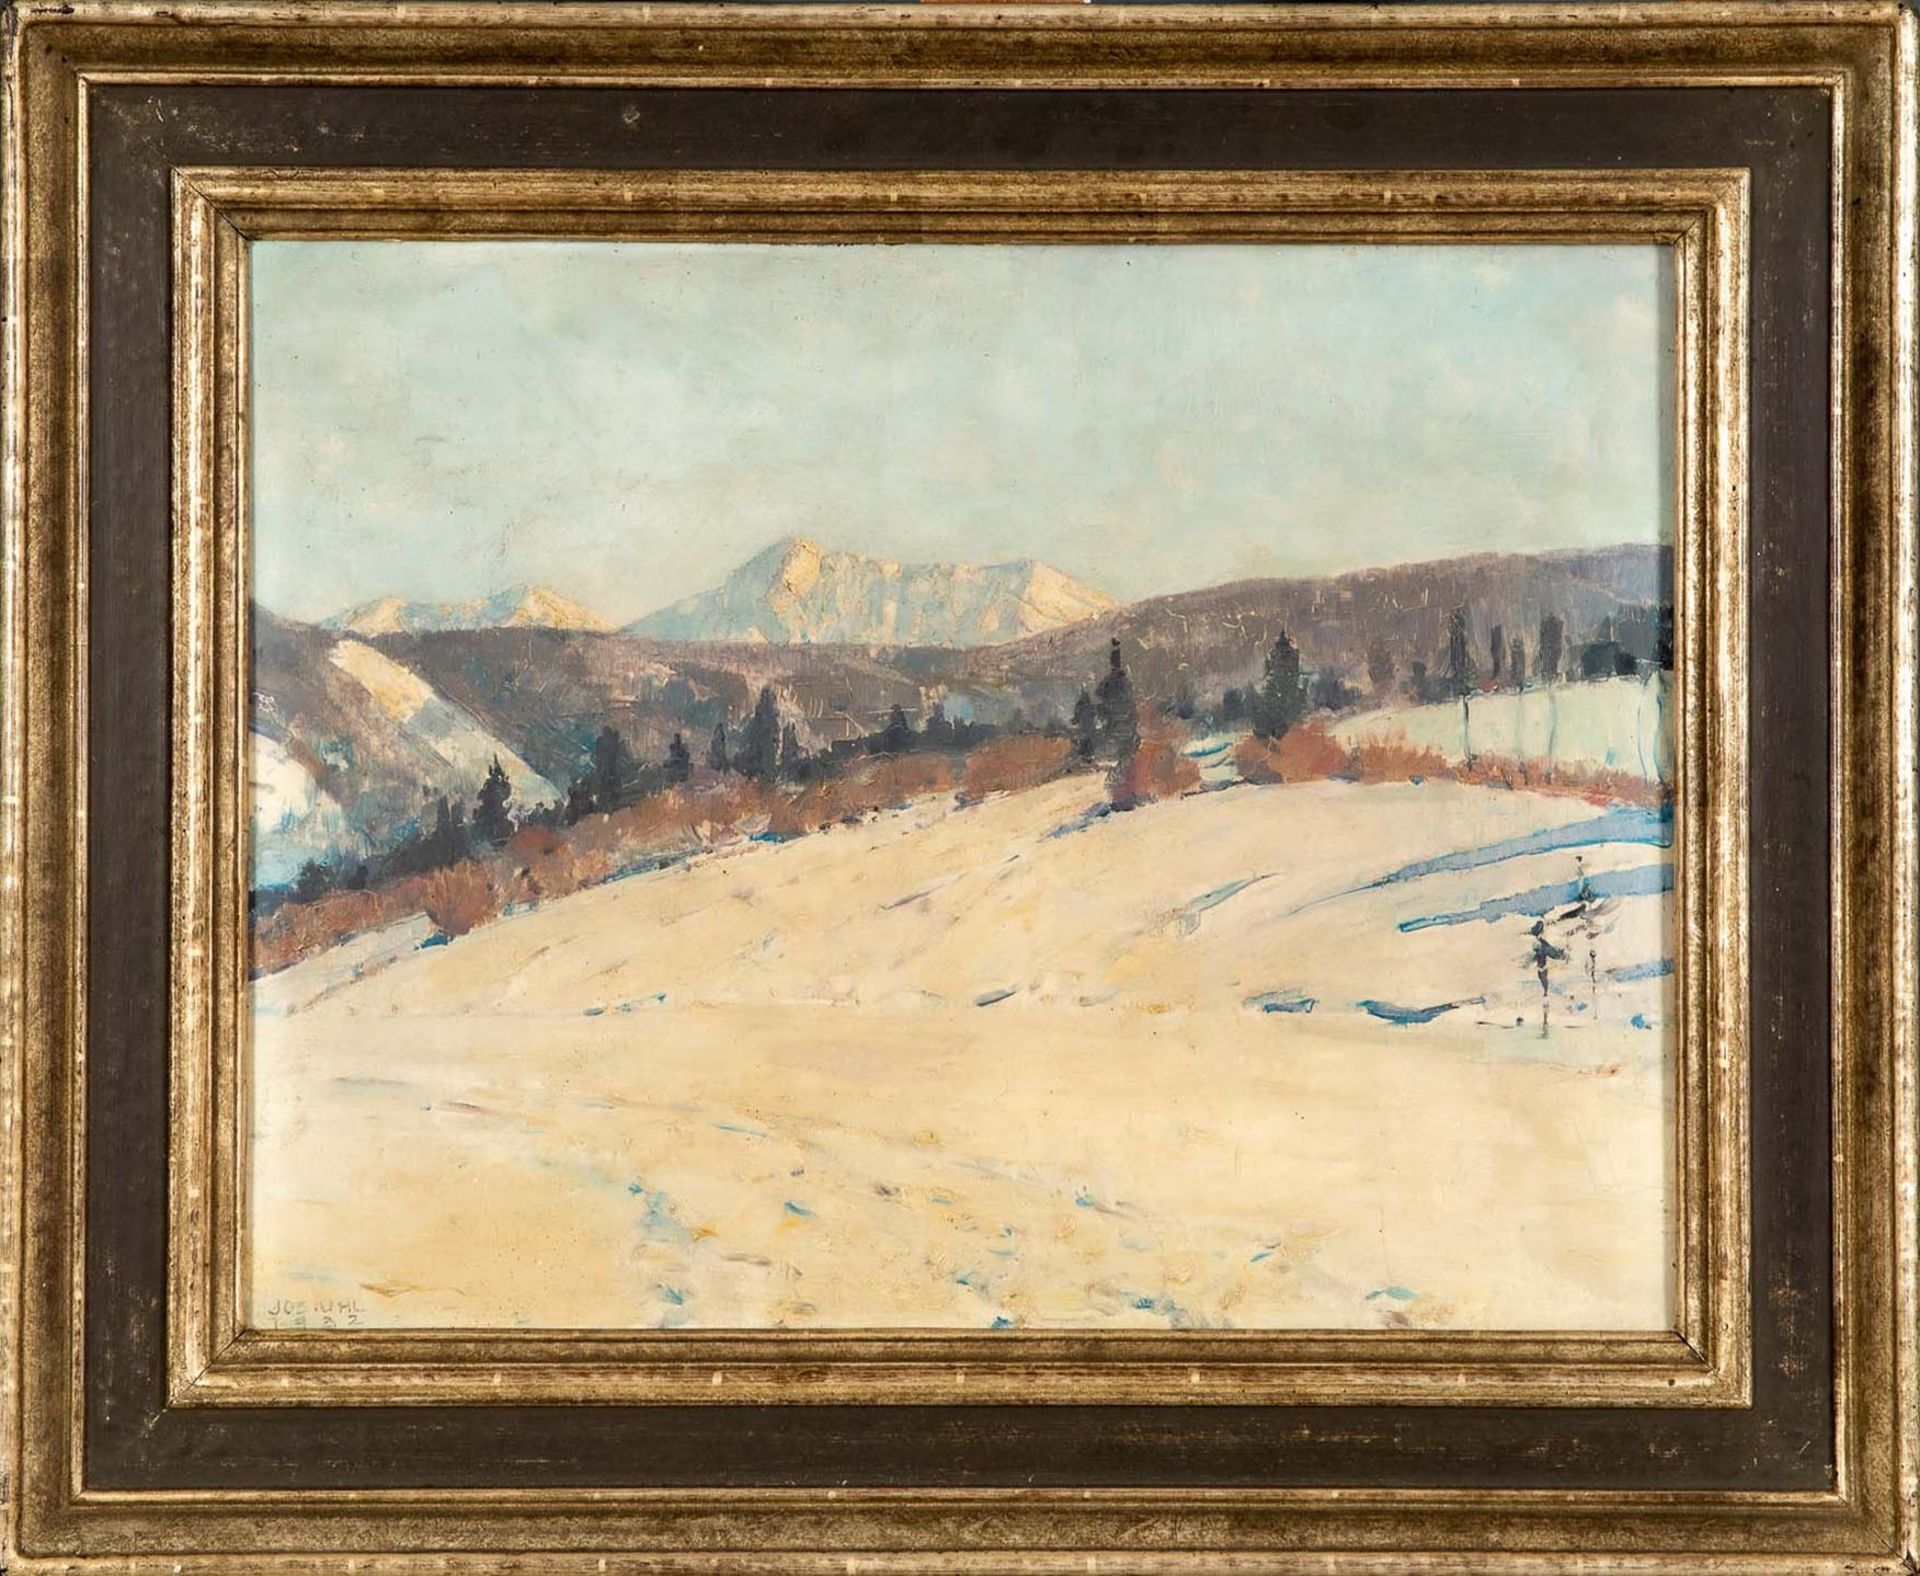 "Alpine Schneelandschaft", Öl auf Schichtholzplatte, unten links sign.: Jos. Uhl, 1932 datiert. Jos